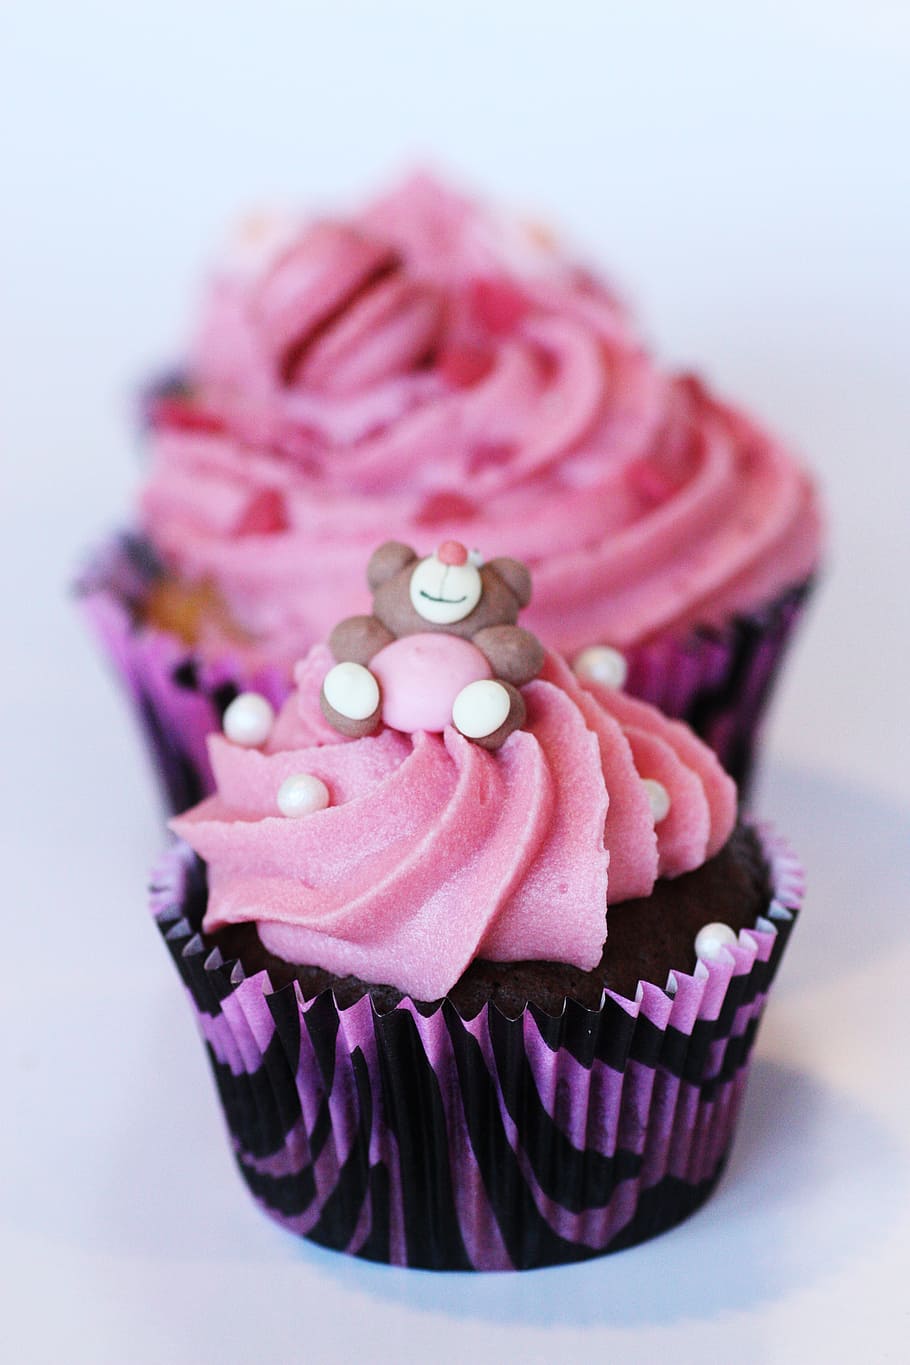 seletiva, fotografia de foco, rosa, preto, cupcake, muffin, bolos, decorações para bolos, creme, glacê